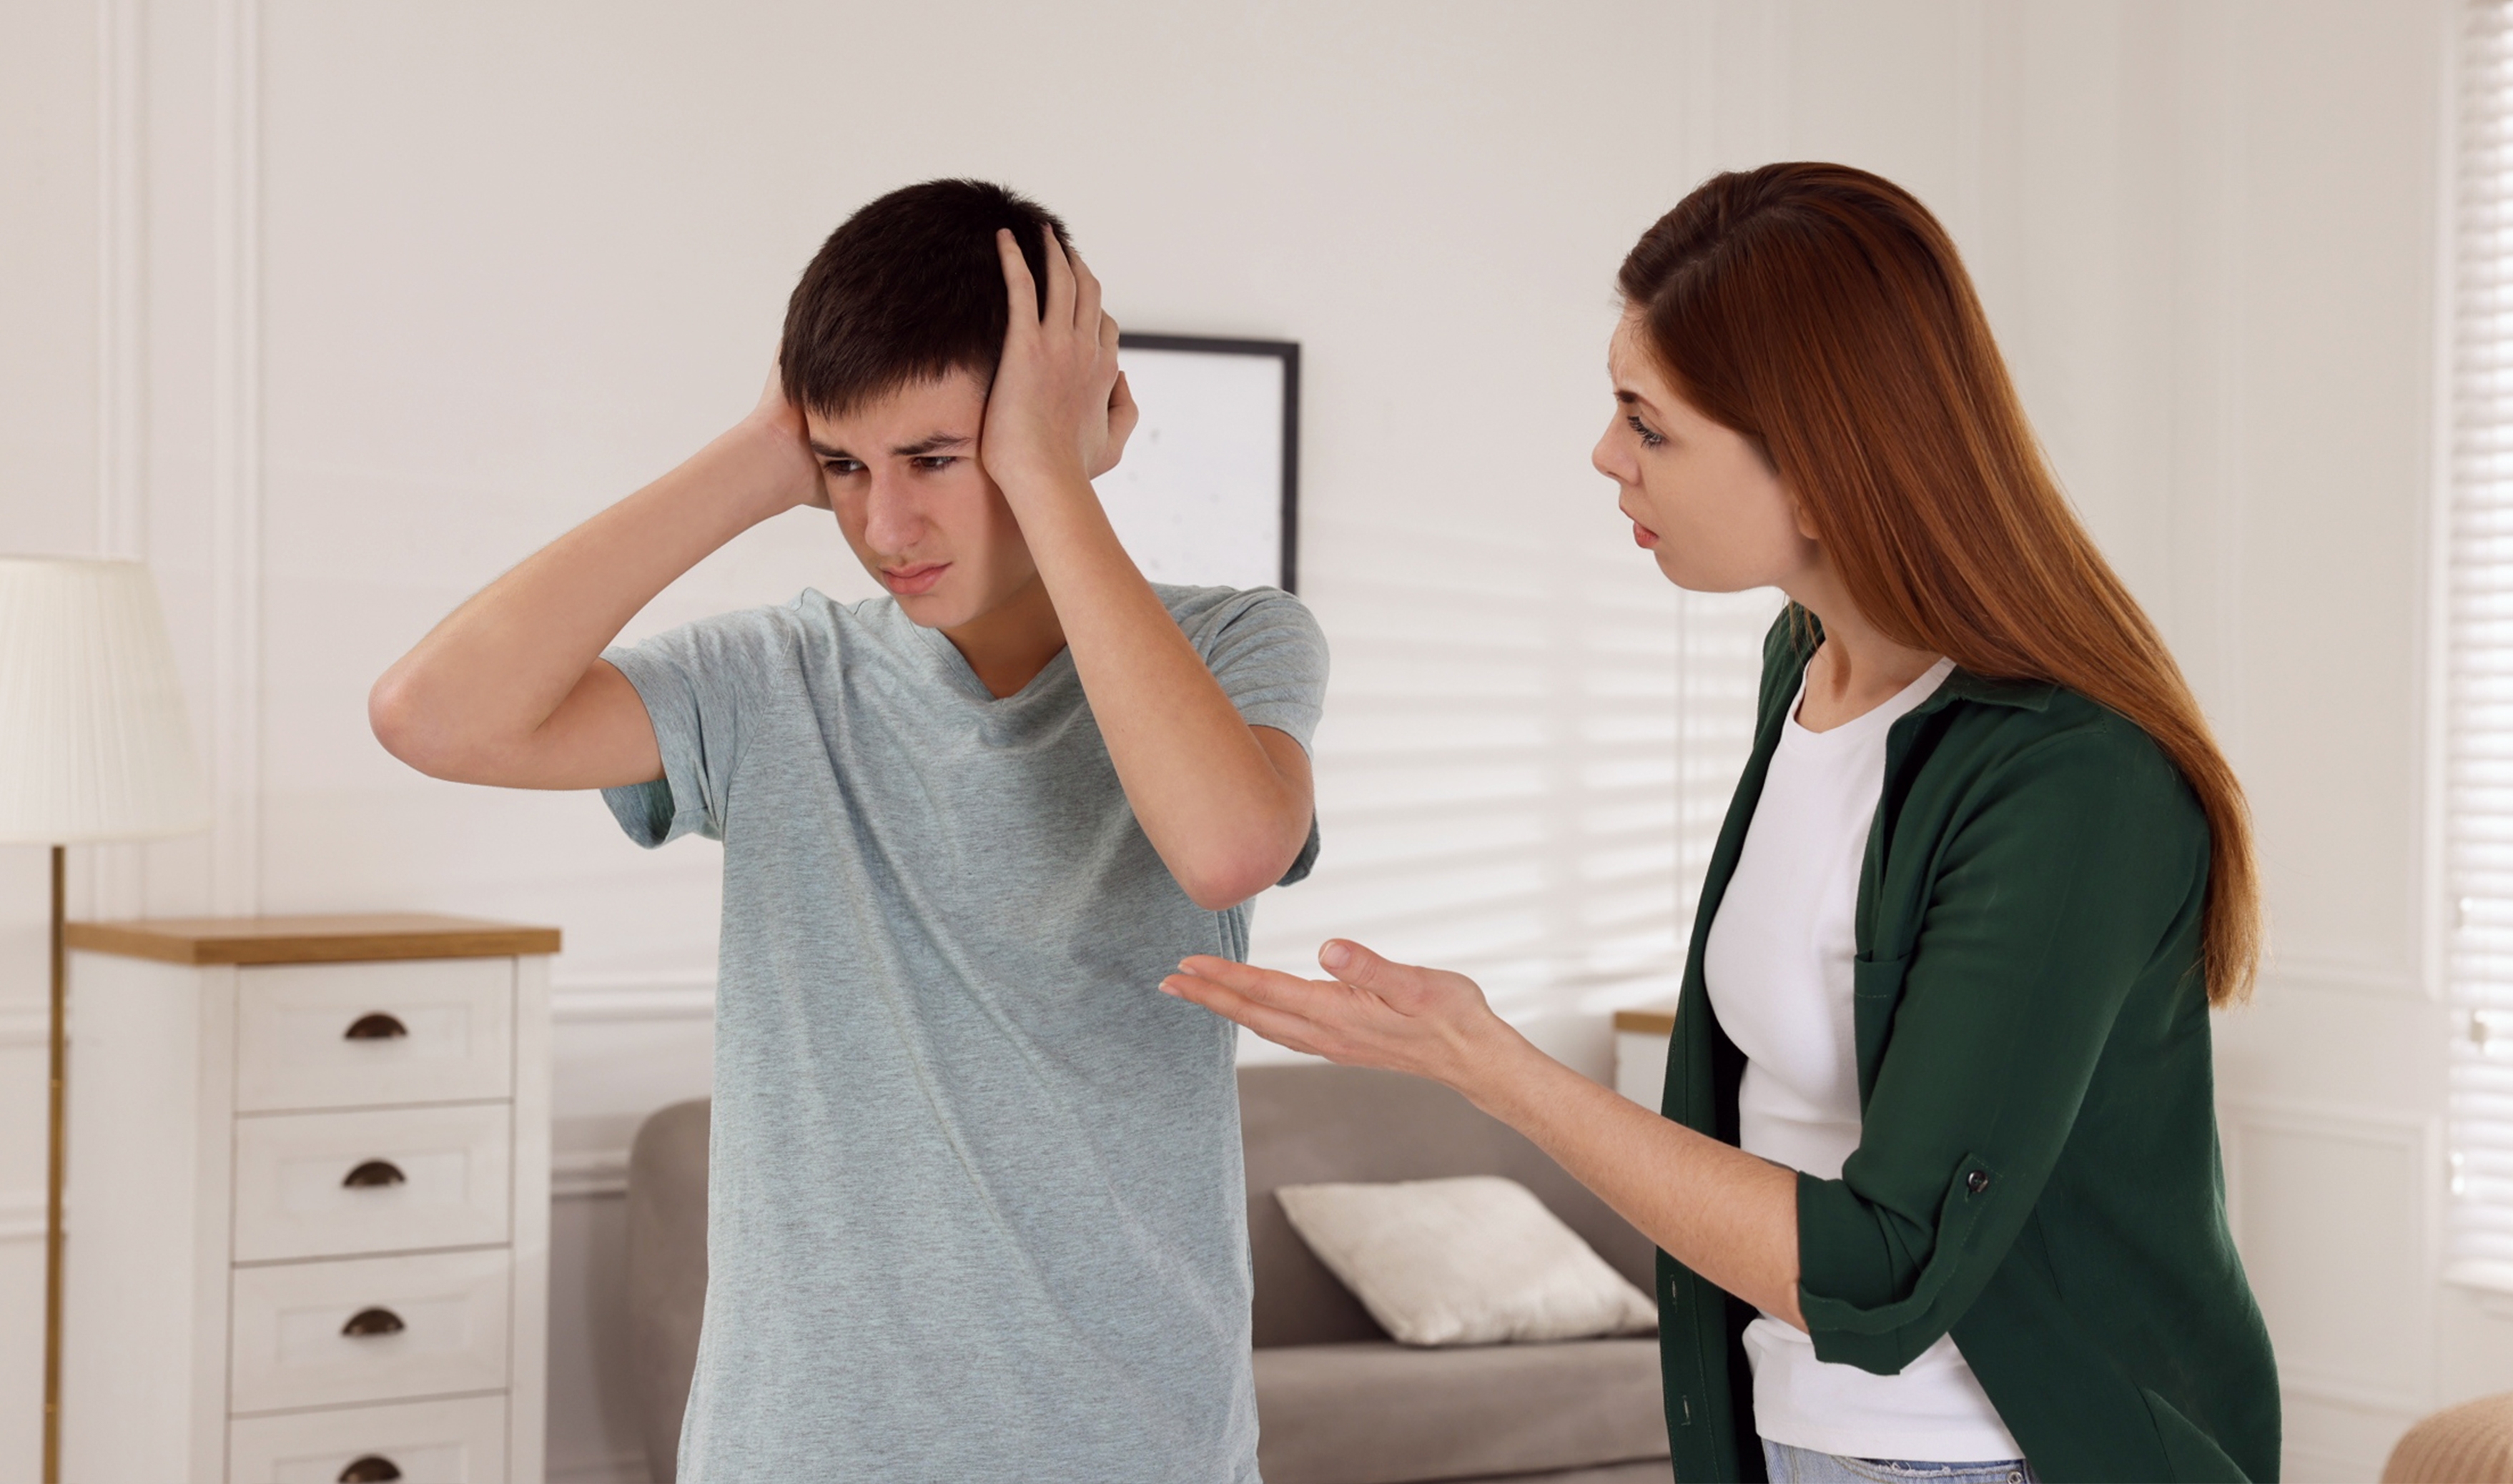 Un adolescent et sa mère en train de se disputer | Source : Shutterstock